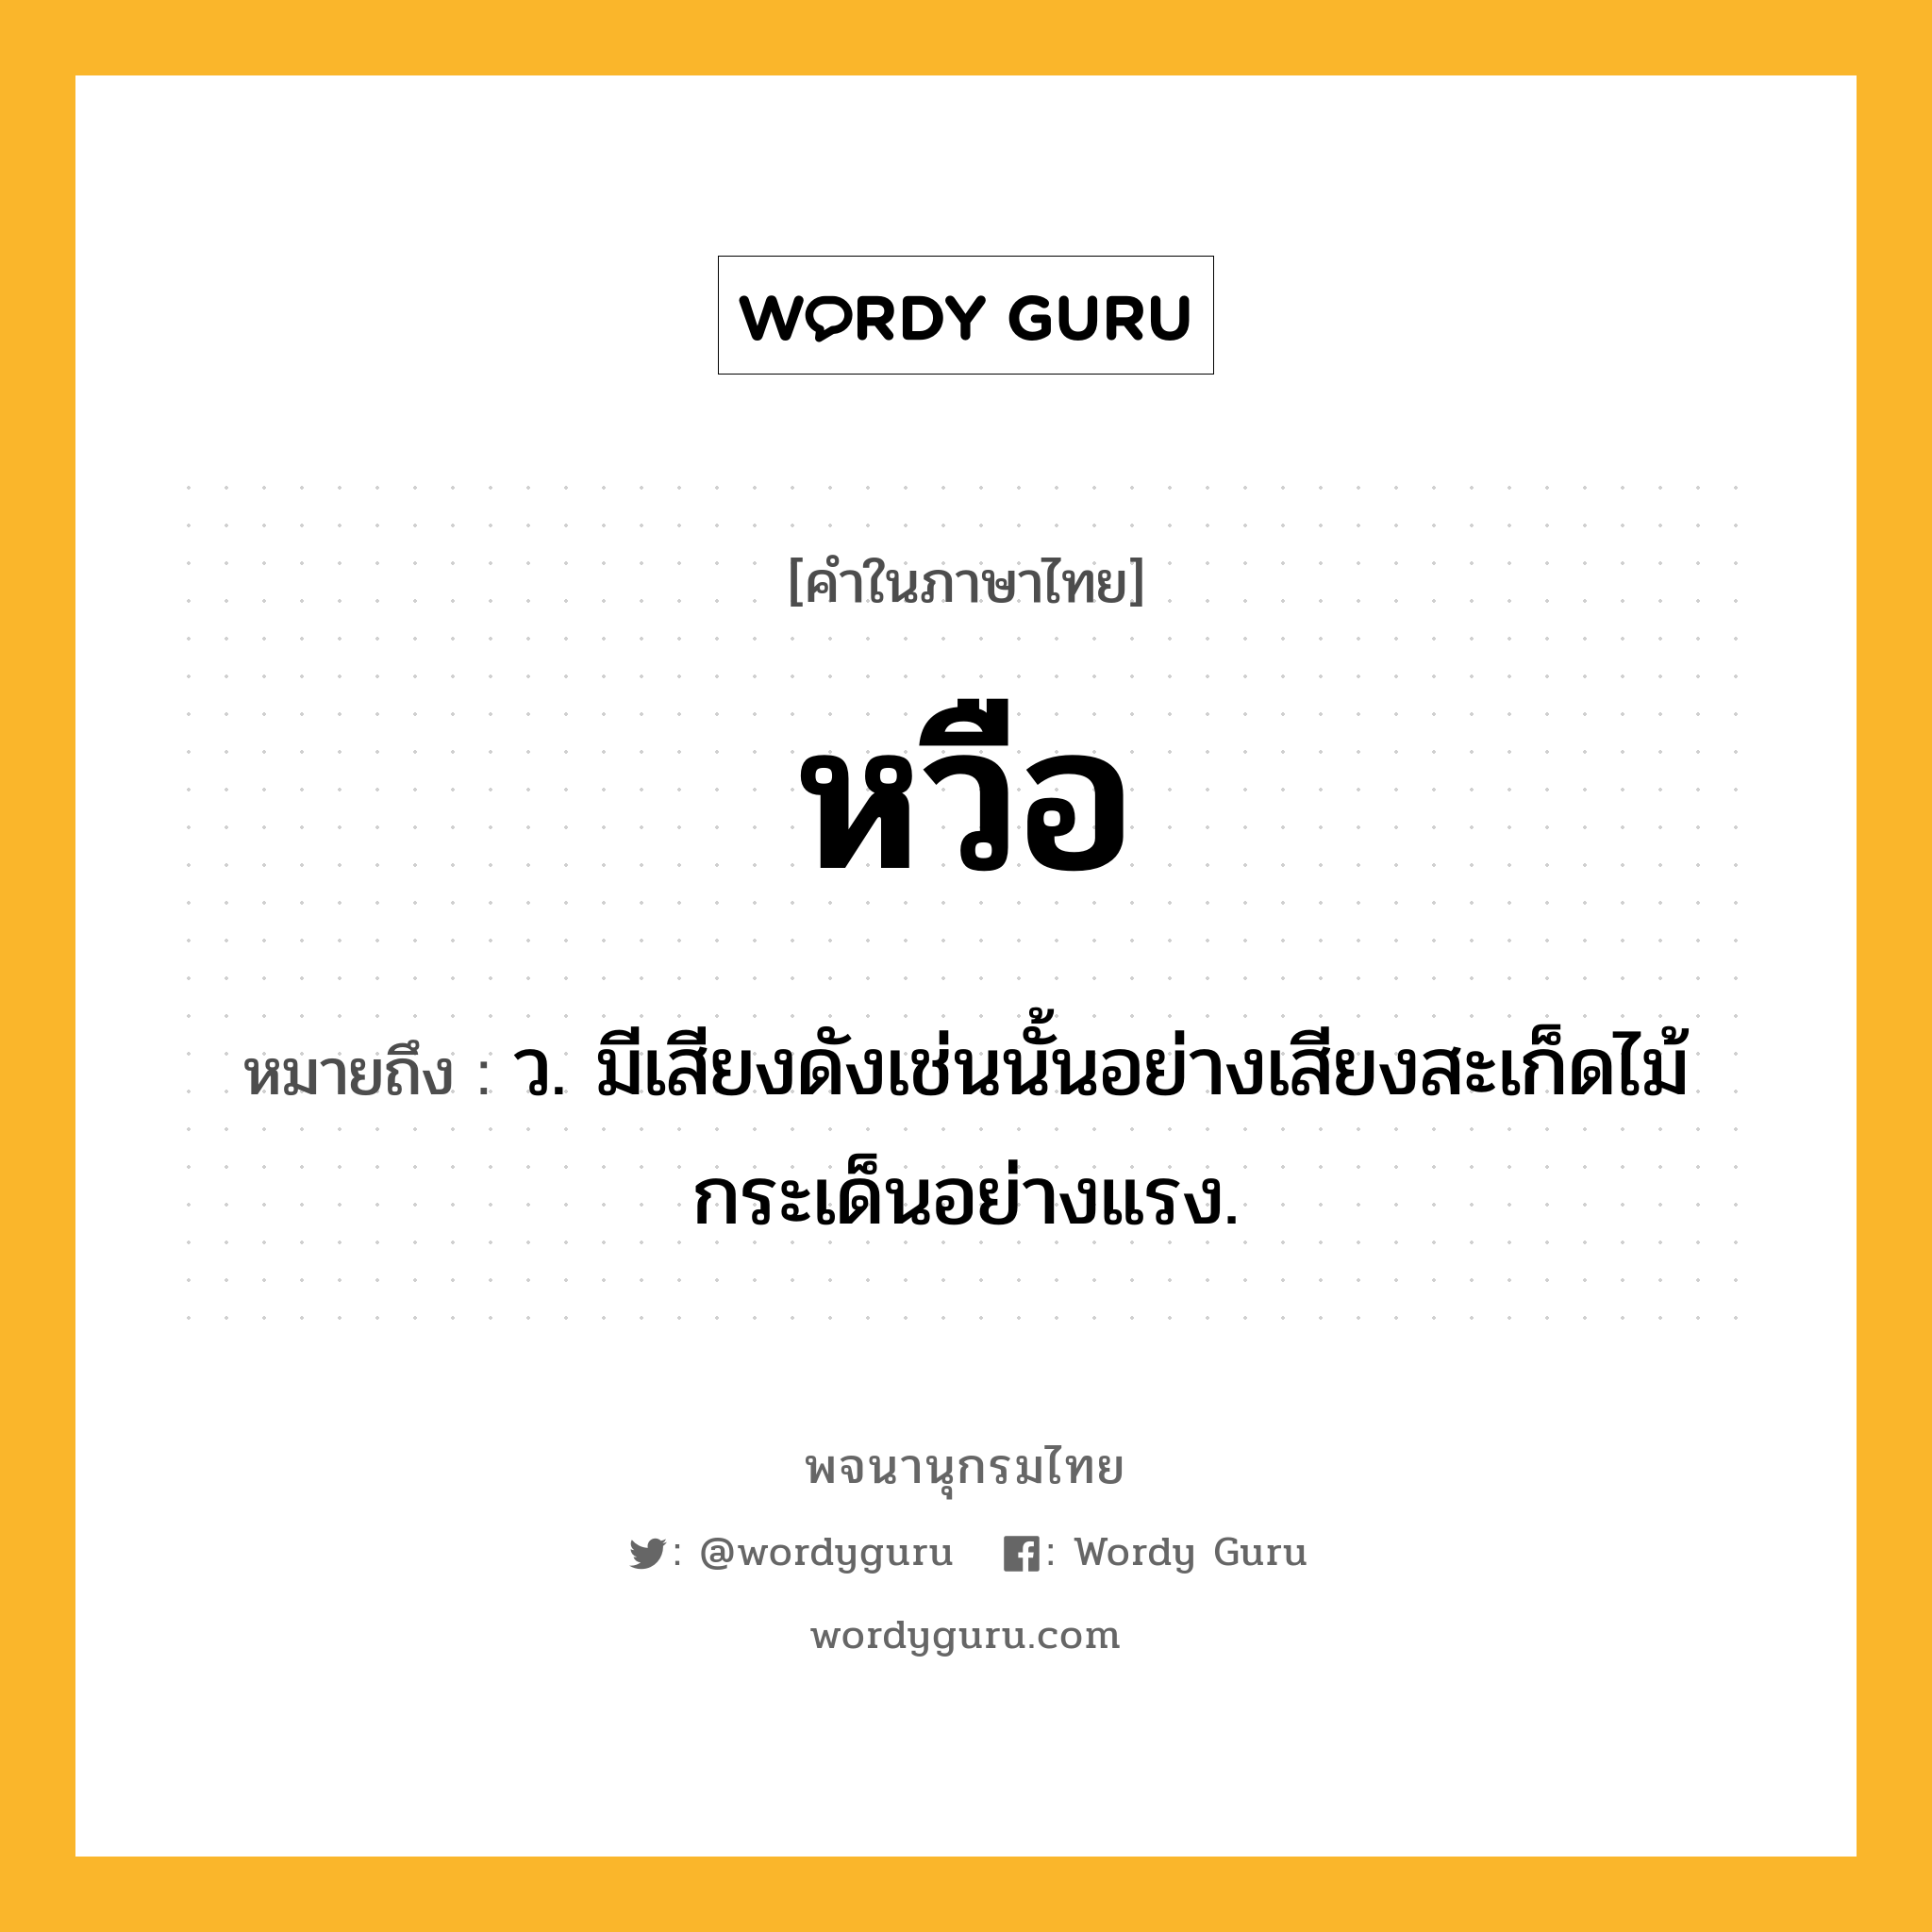 หวือ หมายถึงอะไร?, คำในภาษาไทย หวือ หมายถึง ว. มีเสียงดังเช่นนั้นอย่างเสียงสะเก็ดไม้กระเด็นอย่างแรง.